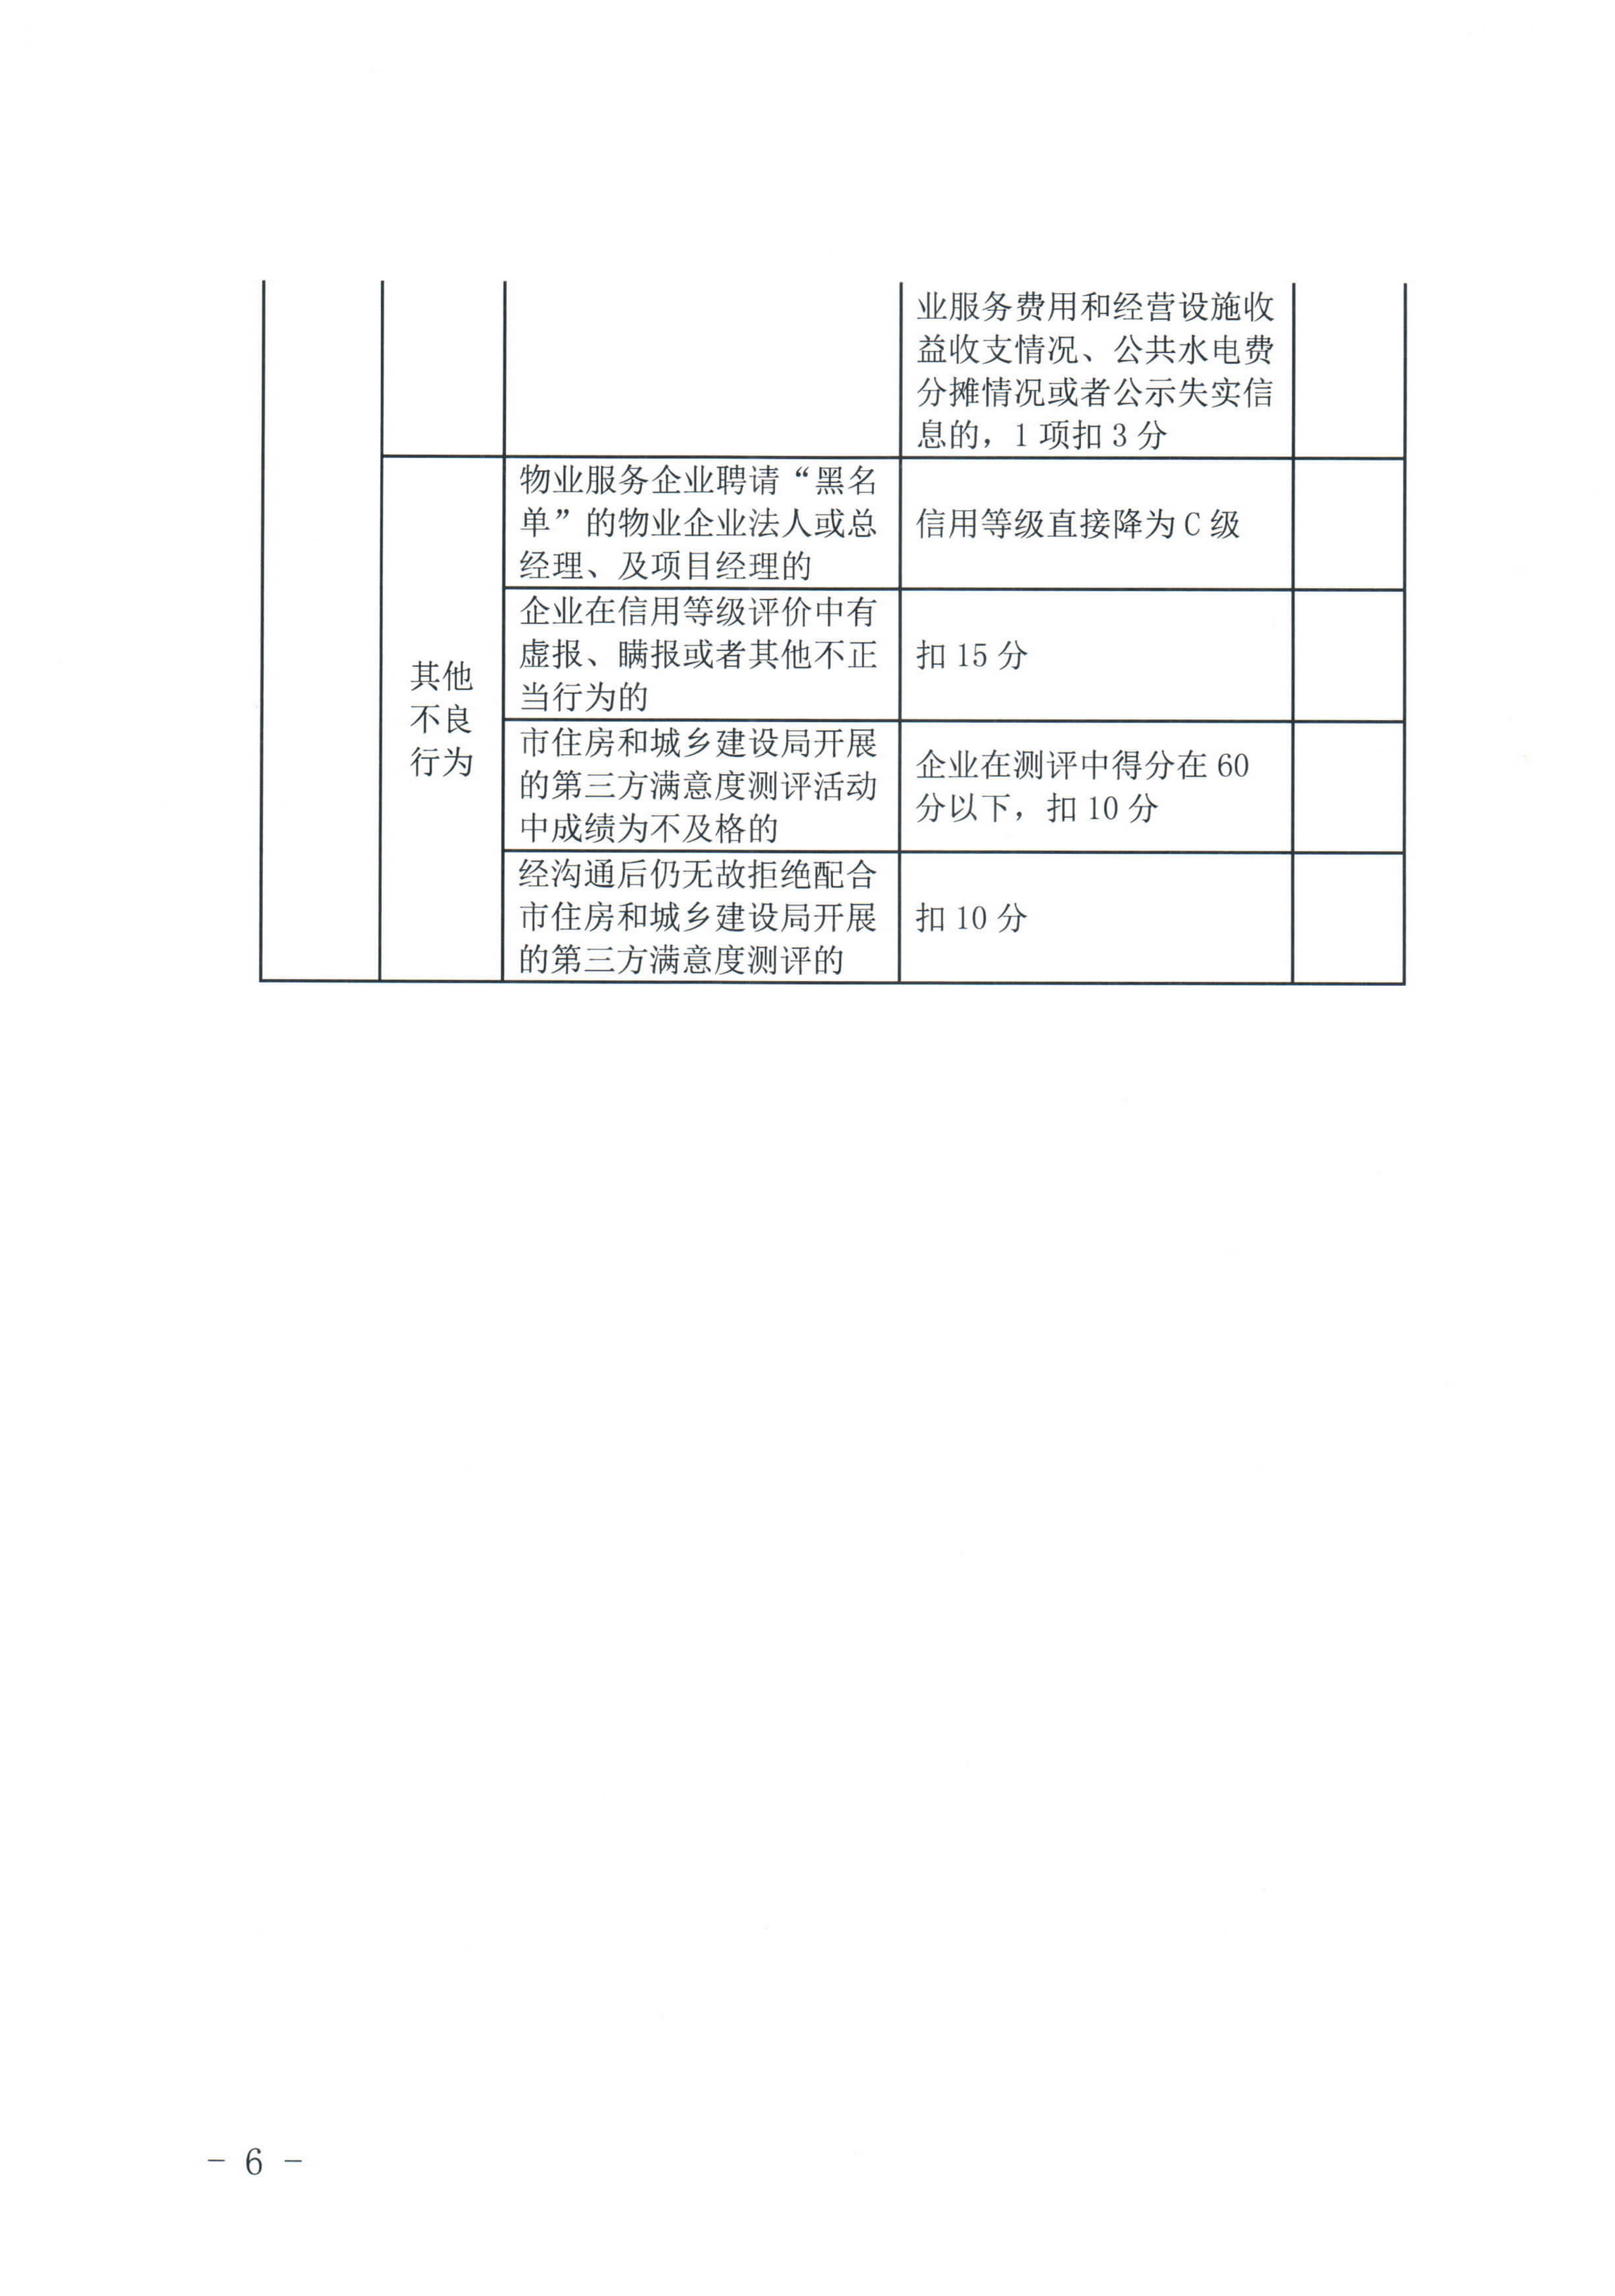 惠州市物业管理协会关于印发《惠州市物业管理活动信用档案管理办法》的通知_22.jpg